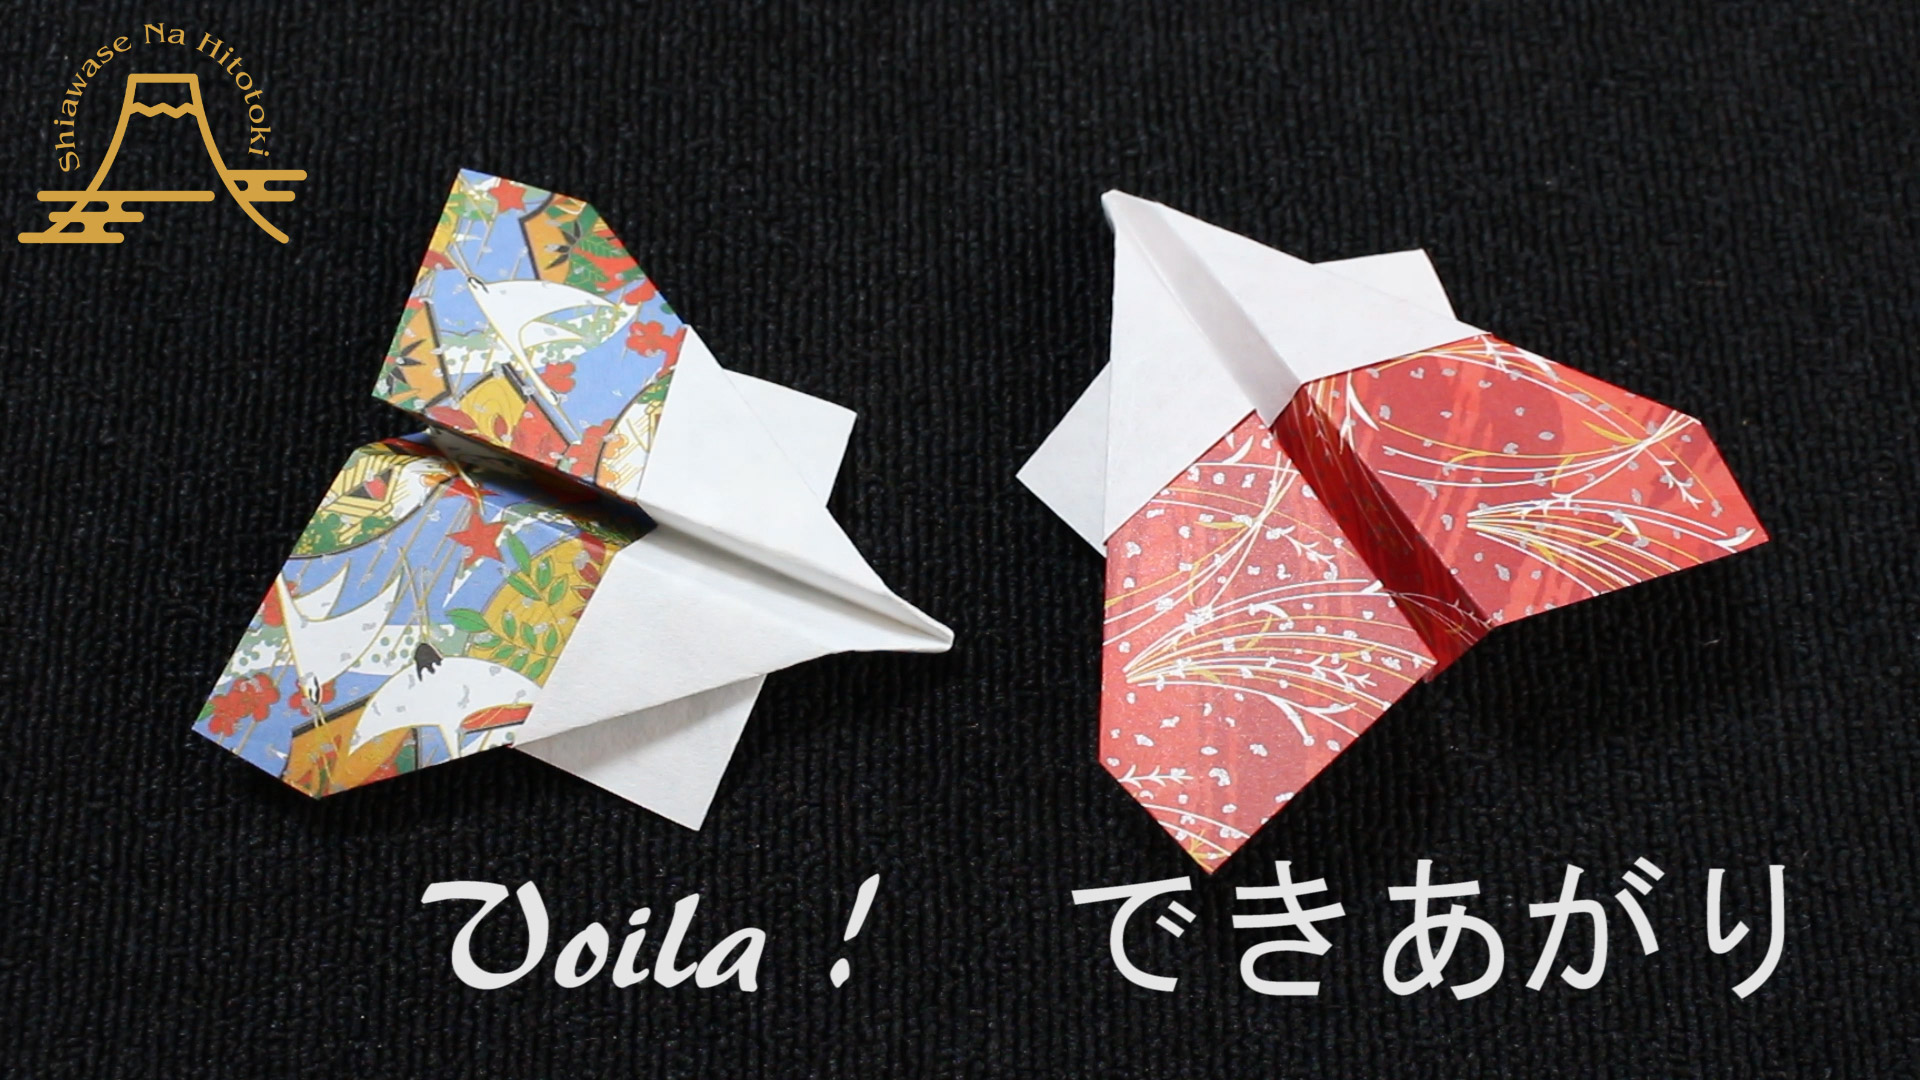 簡単 折り紙 かっこいい紙飛行機 折り紙の折り方 幸せなひと時